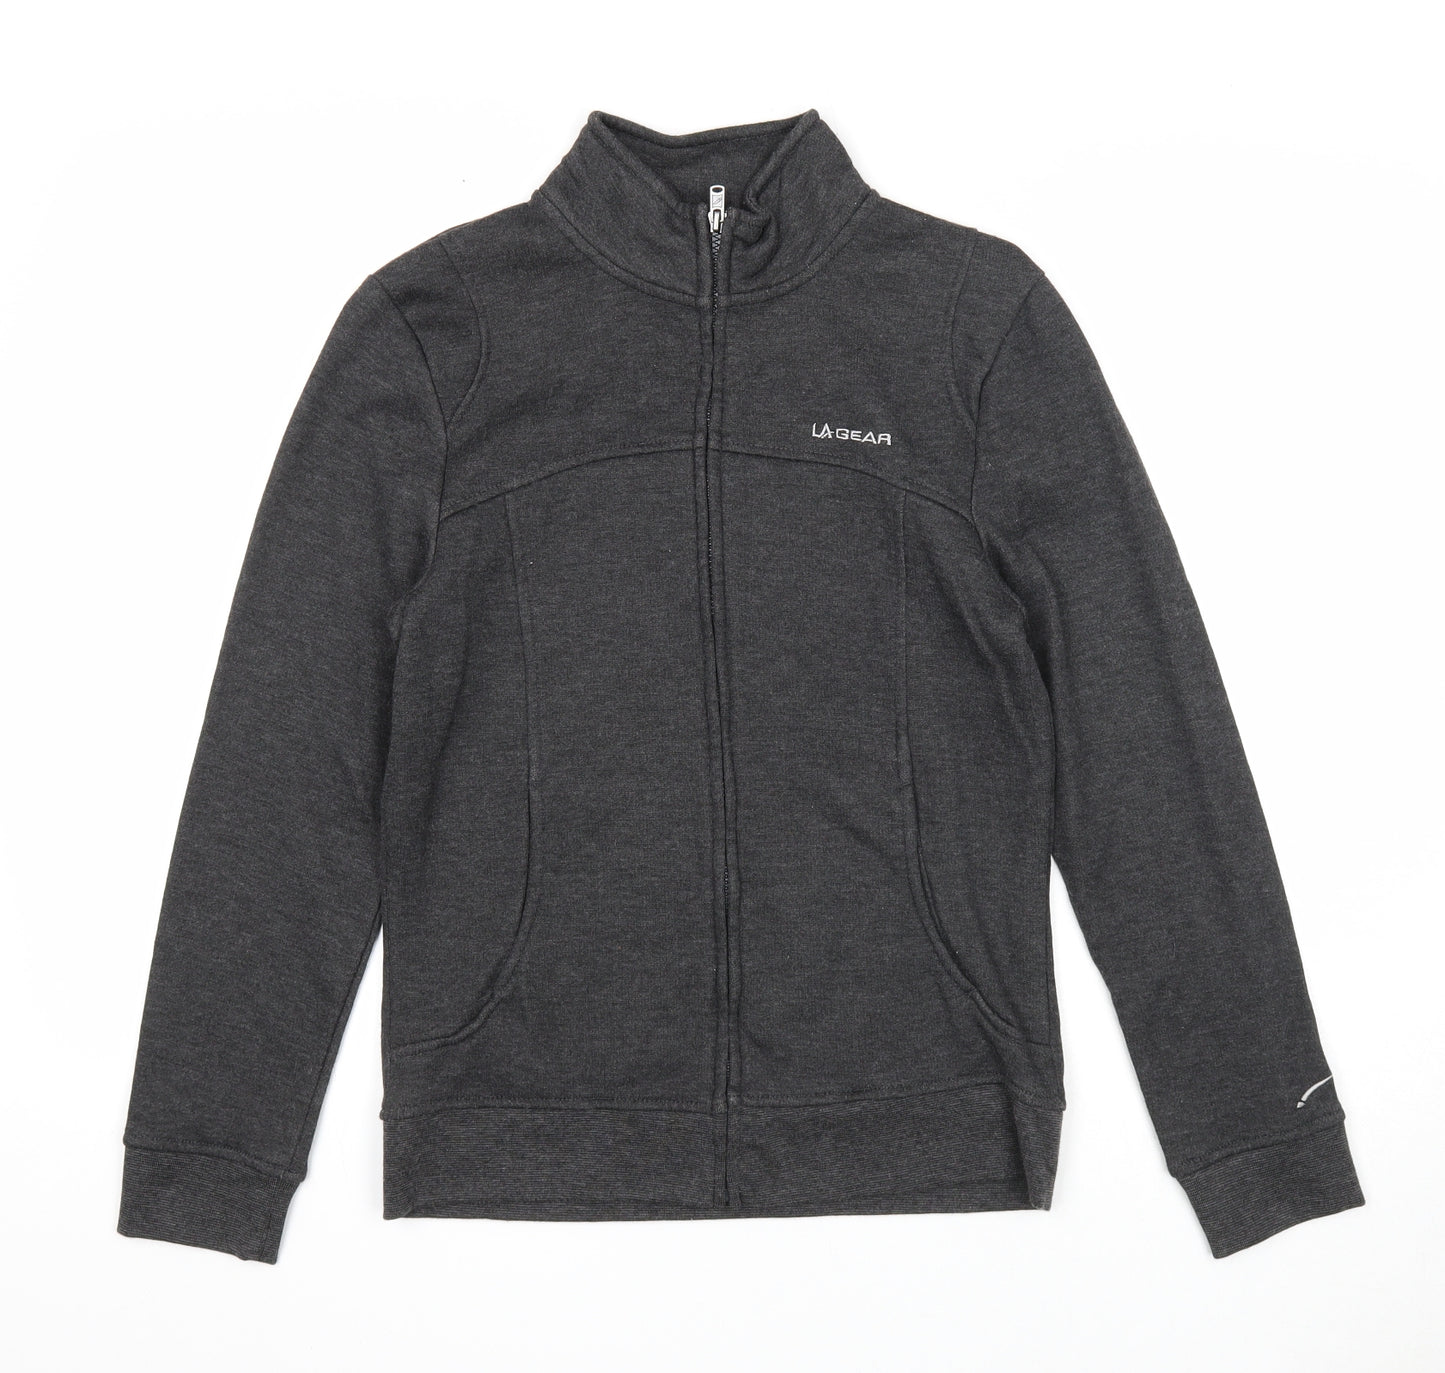 LA Gear Womens Grey Polyester Full Zip Sweatshirt Size 8 Zip